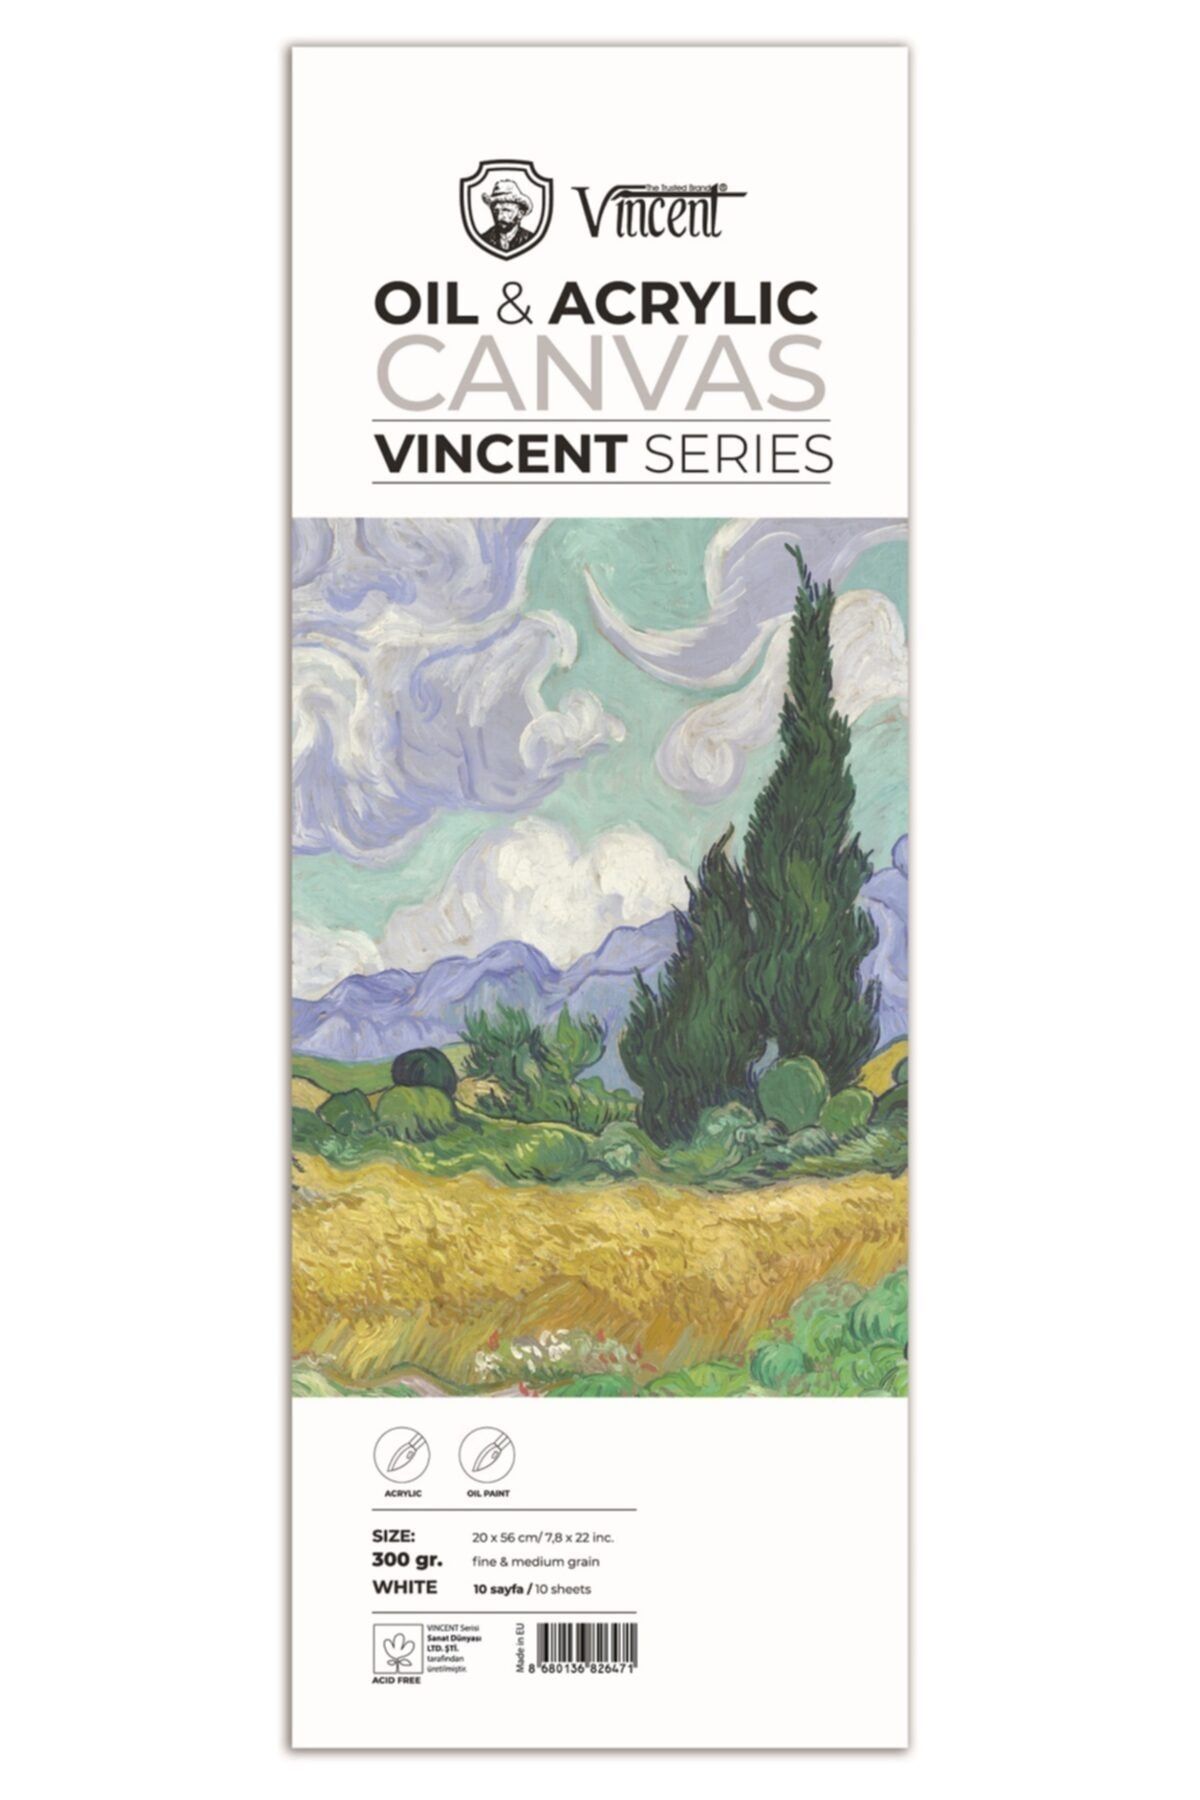 Vincent Vıncent Oıl Acrylıc Canvas Whıte 300gr 20cmx56cm 10 Sayfa Yağlı Ve Akrilik Boya Defteri